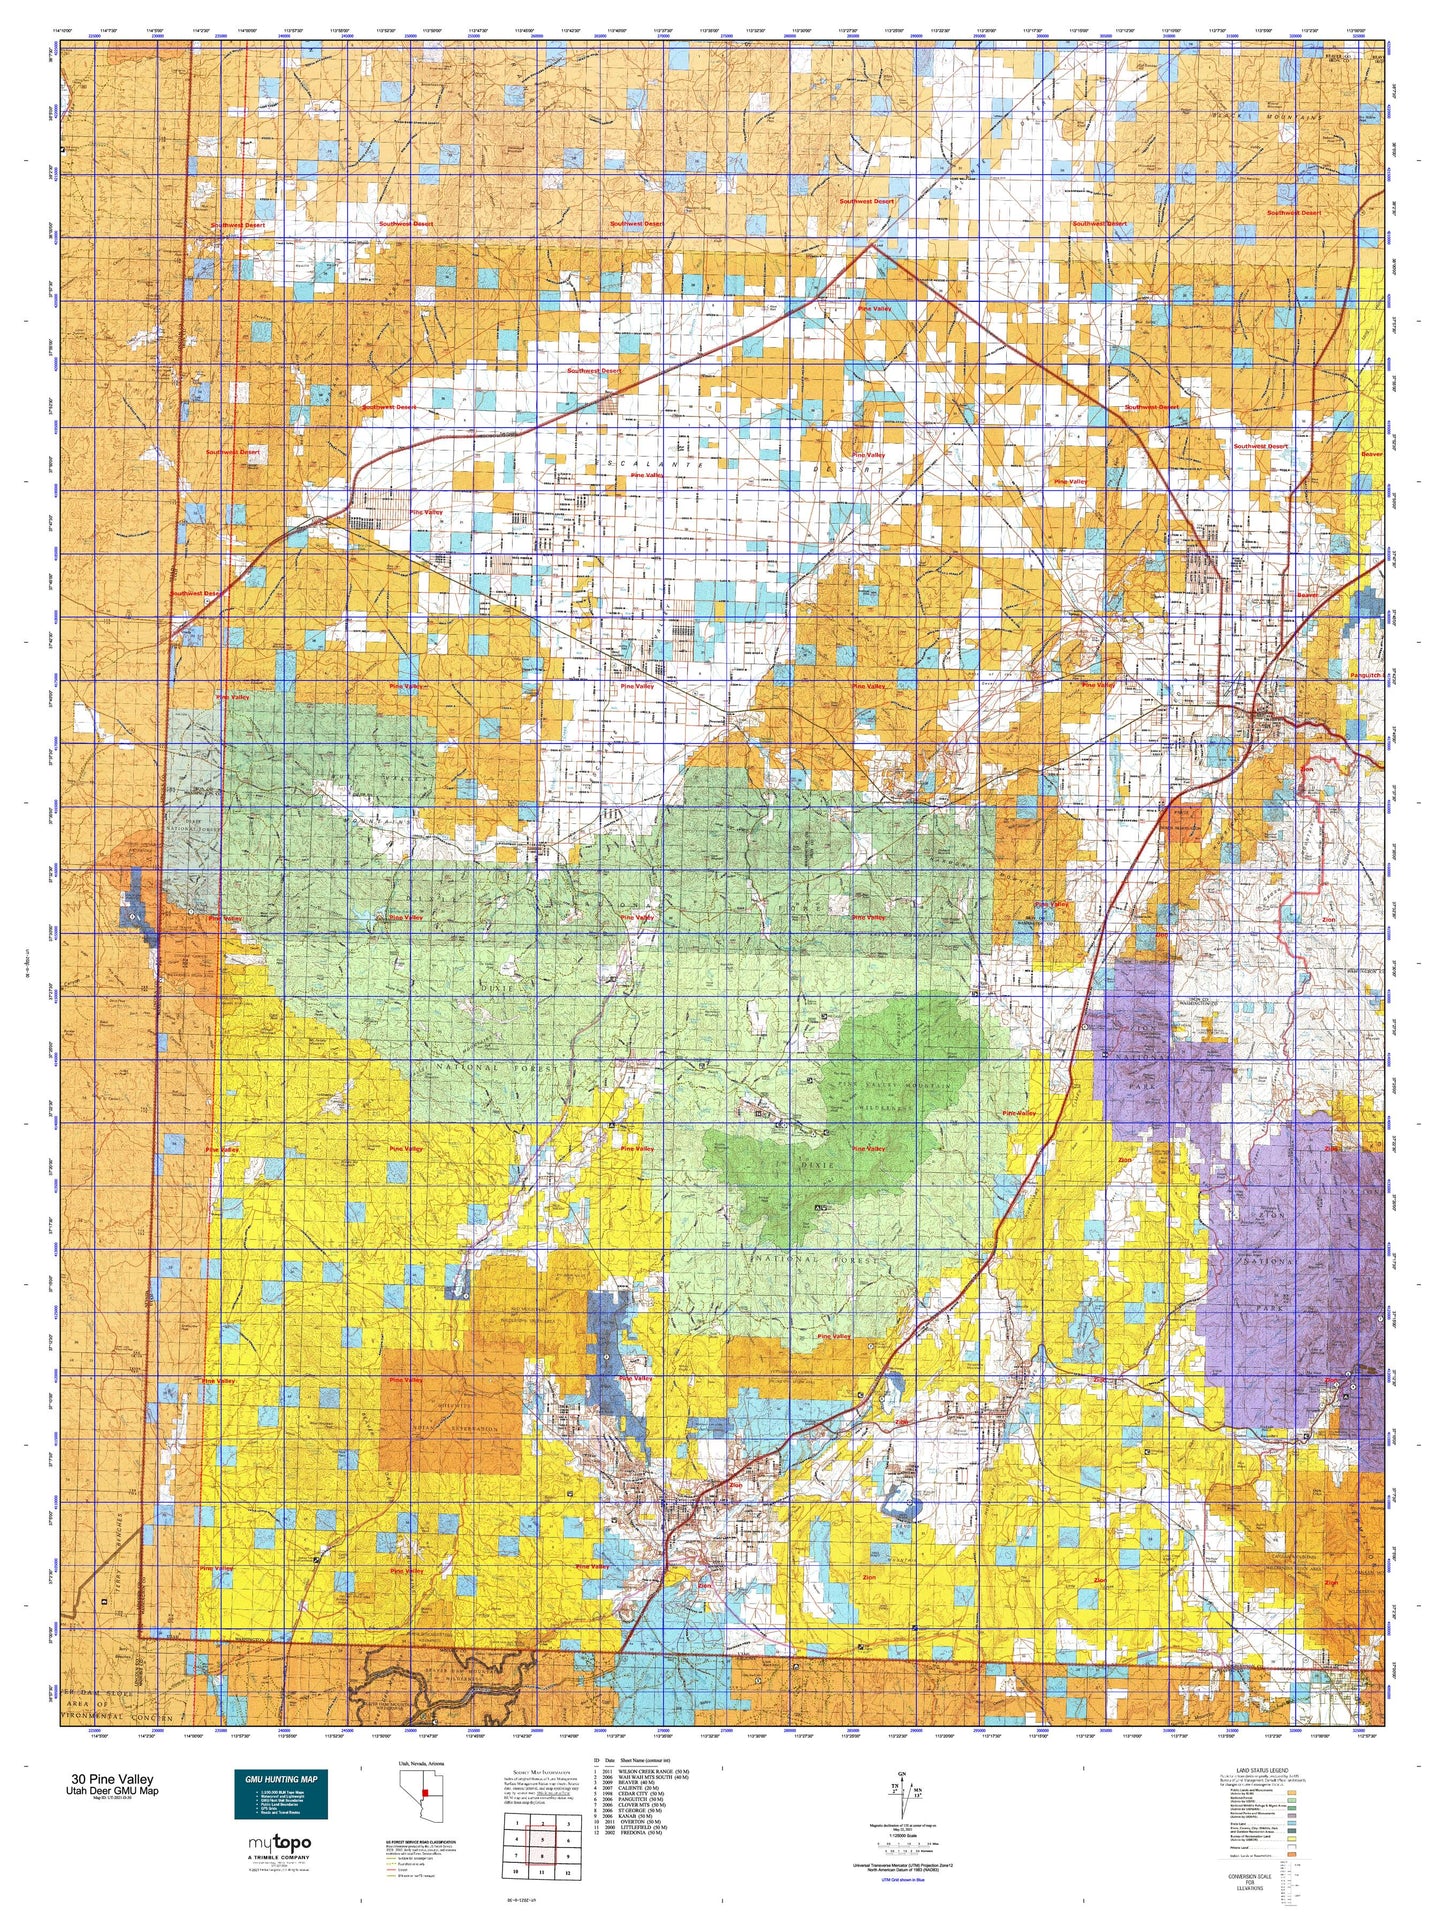 Utah Deer GMU 30 Pine Valley Map Image